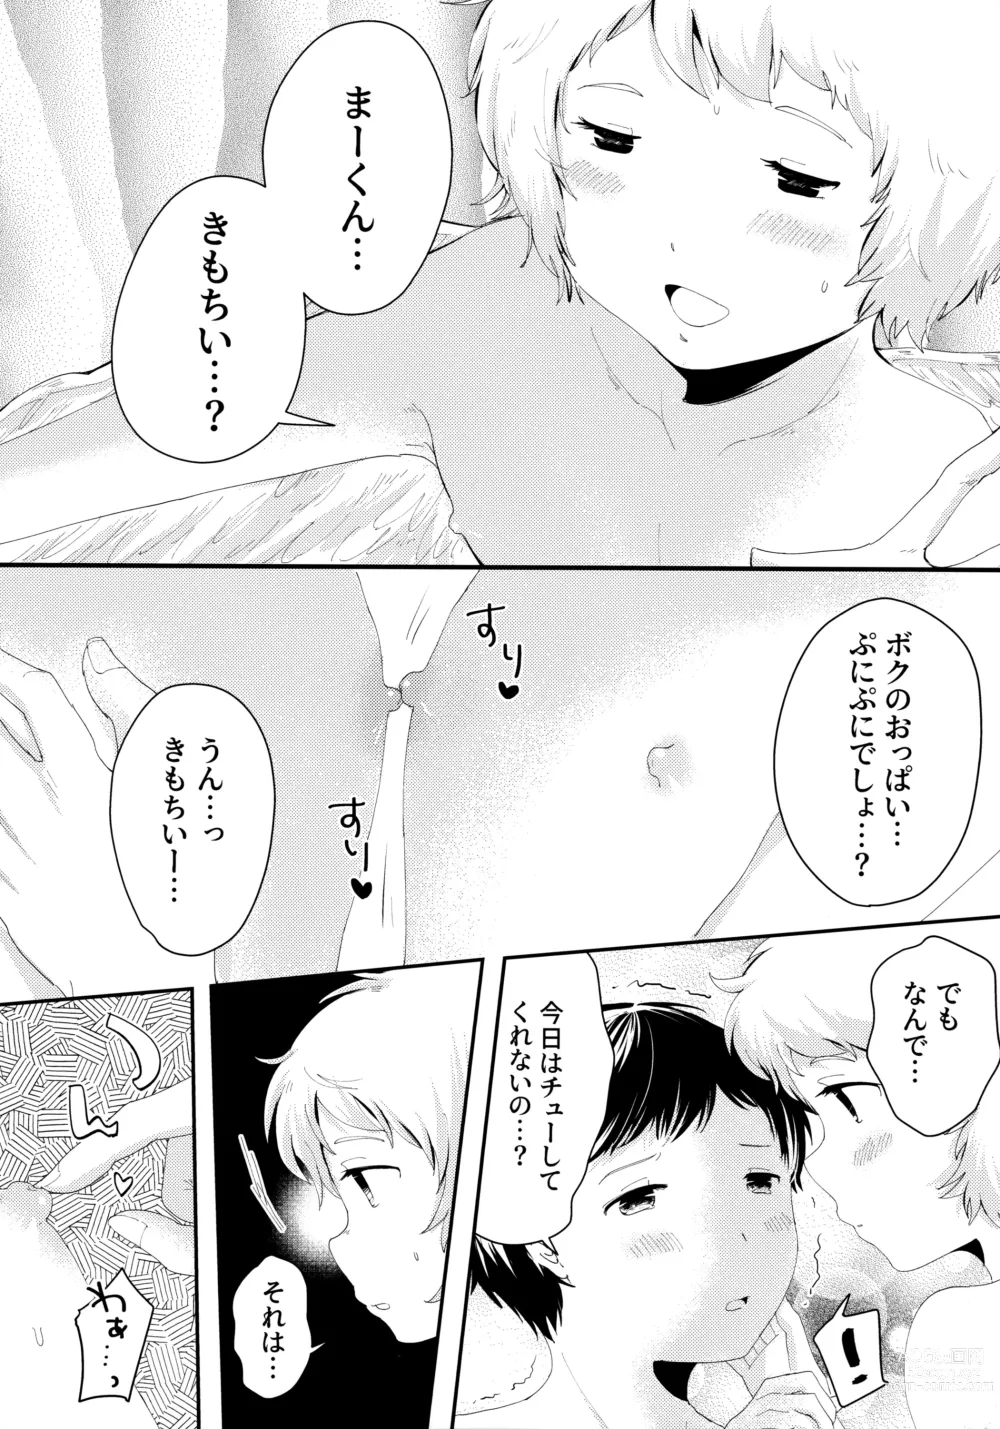 Page 5 of doujinshi Tenshinohane Yasume